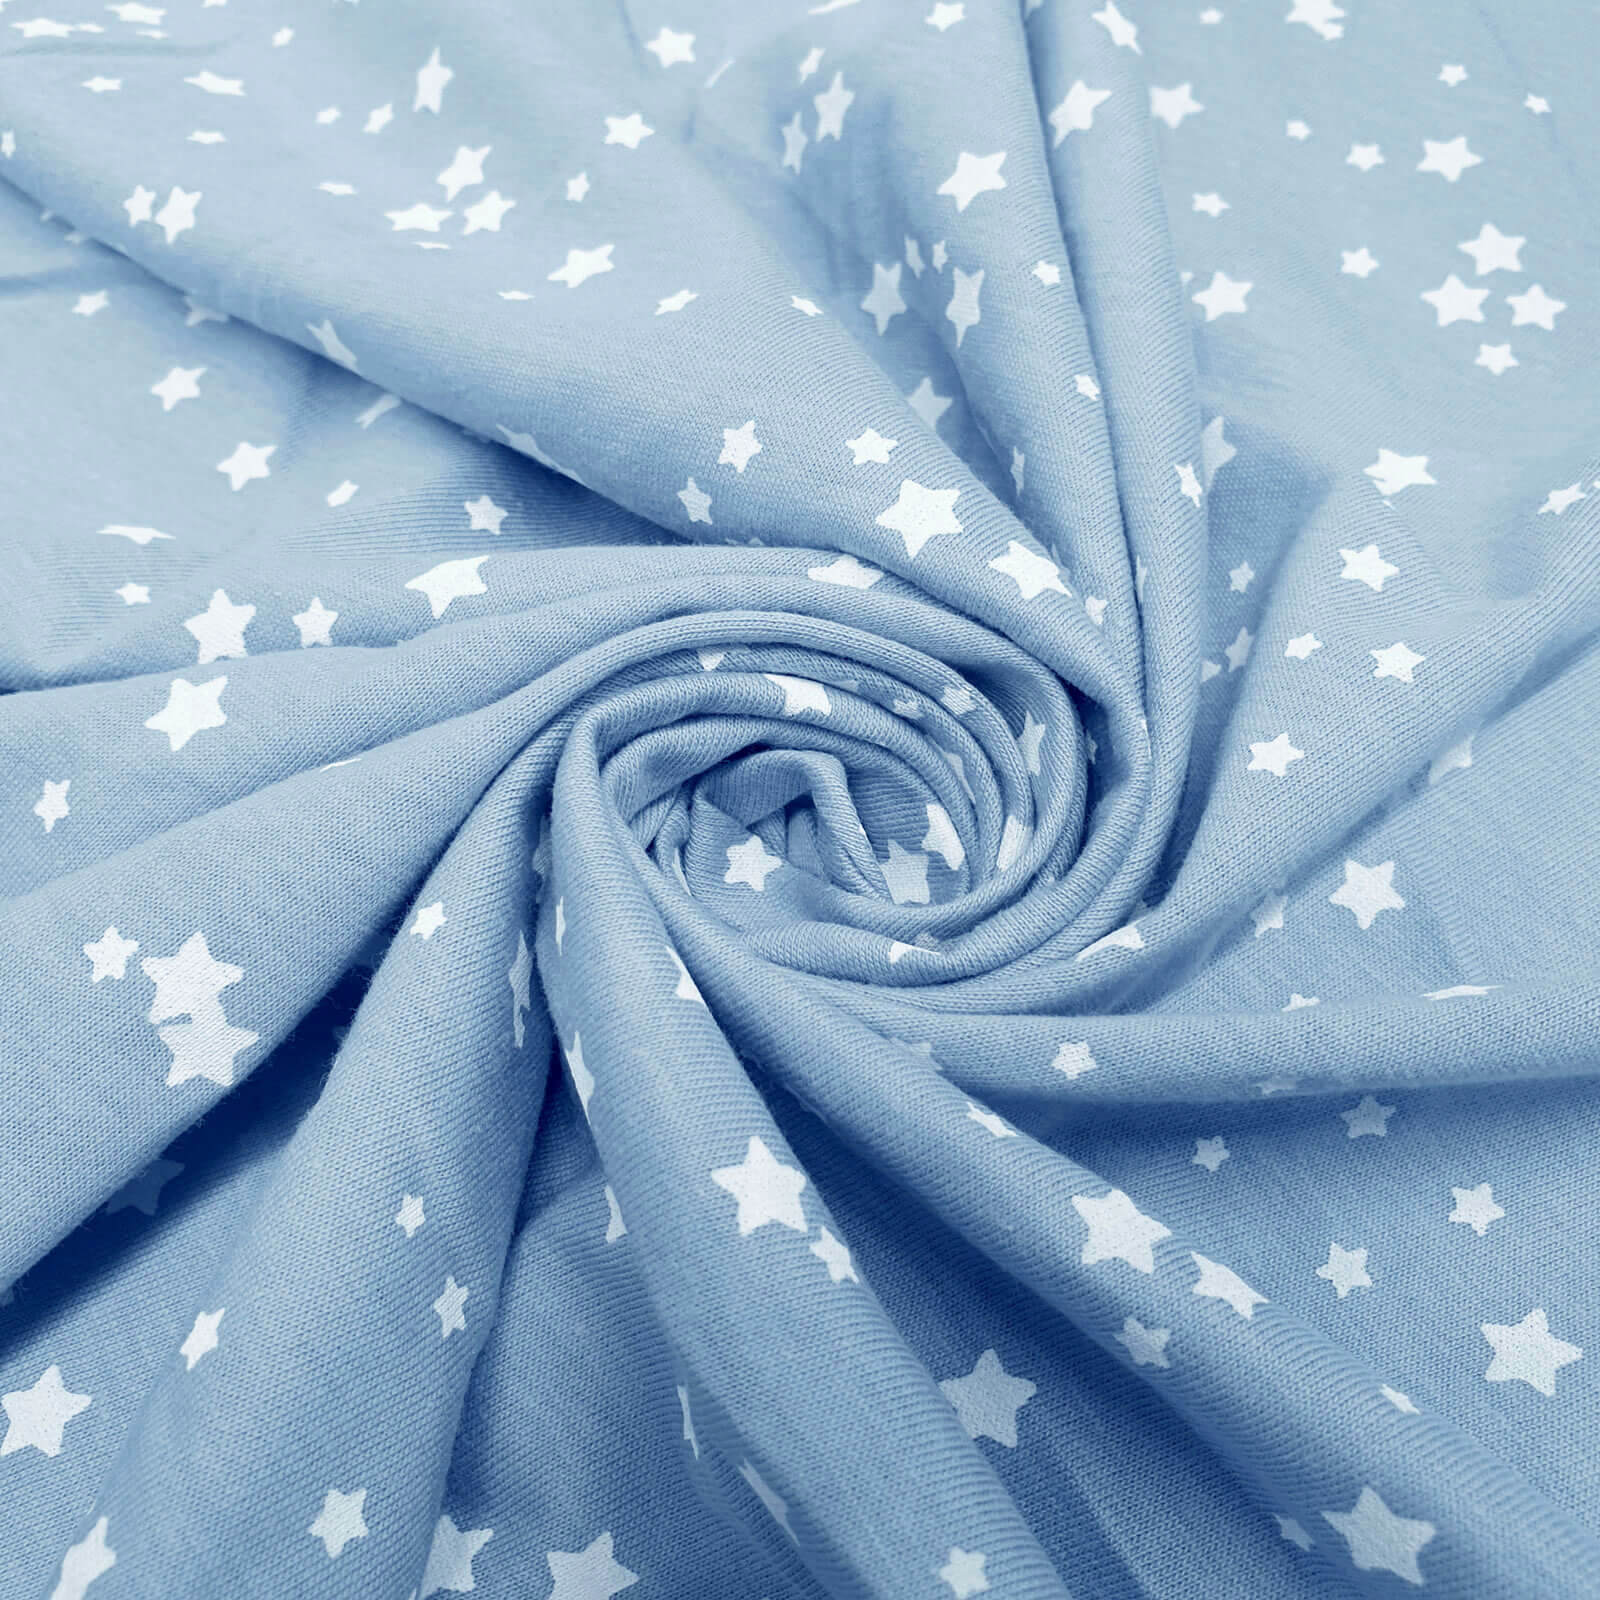 Felo - Baumwoll-Jersey mit Sternen - Hellblau